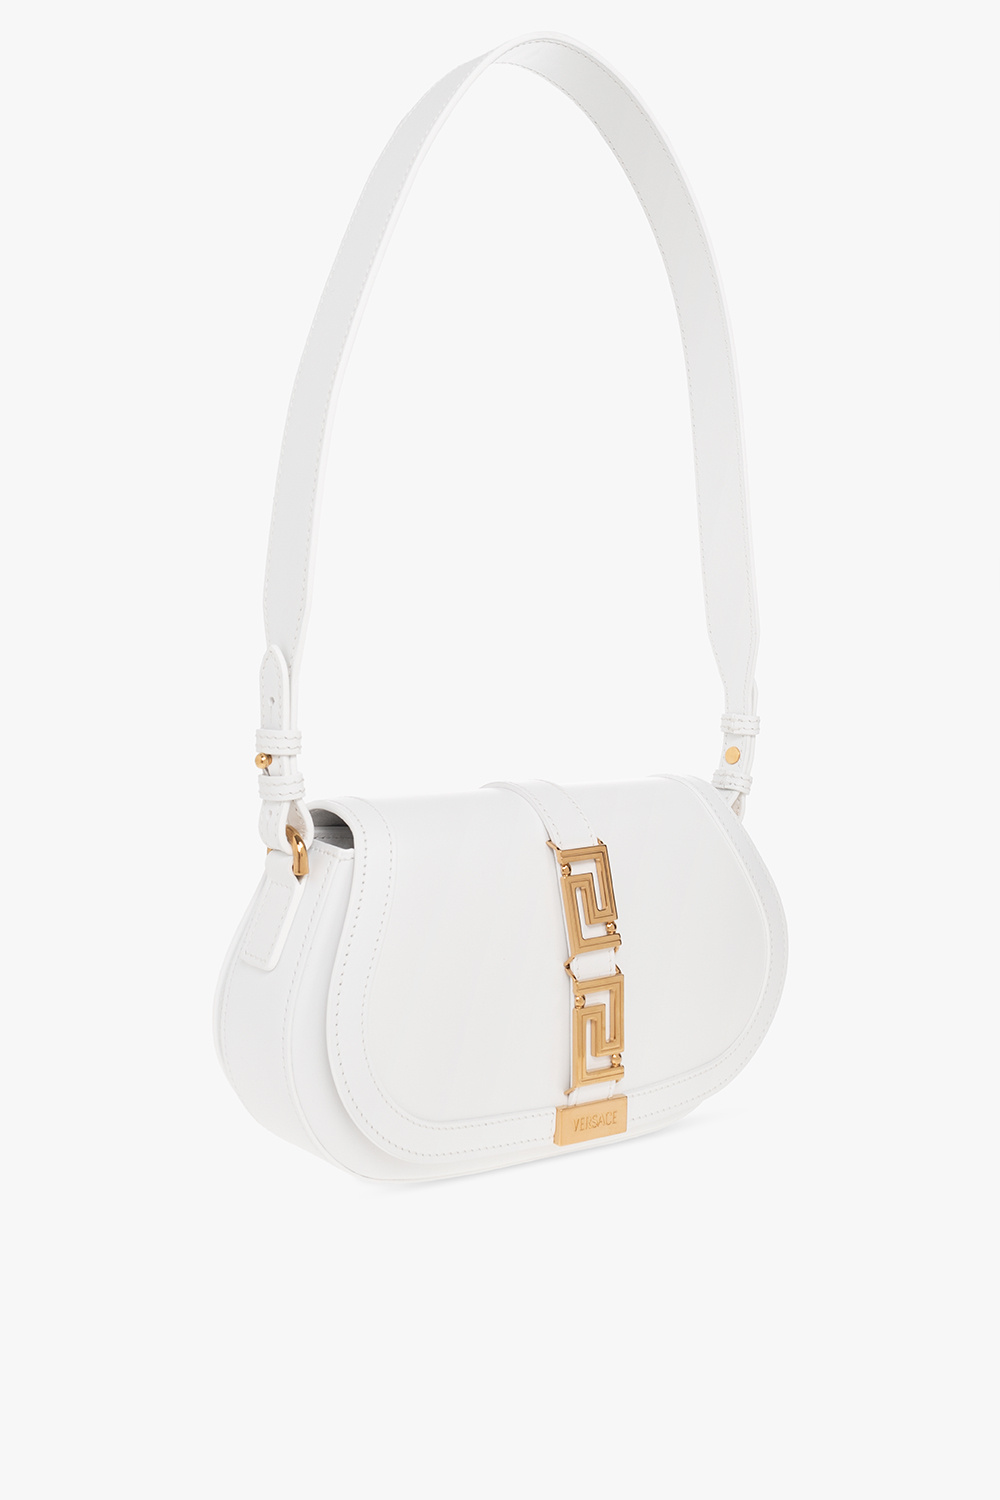 Versace ‘Greca ‘Goddess’ shoulder bag